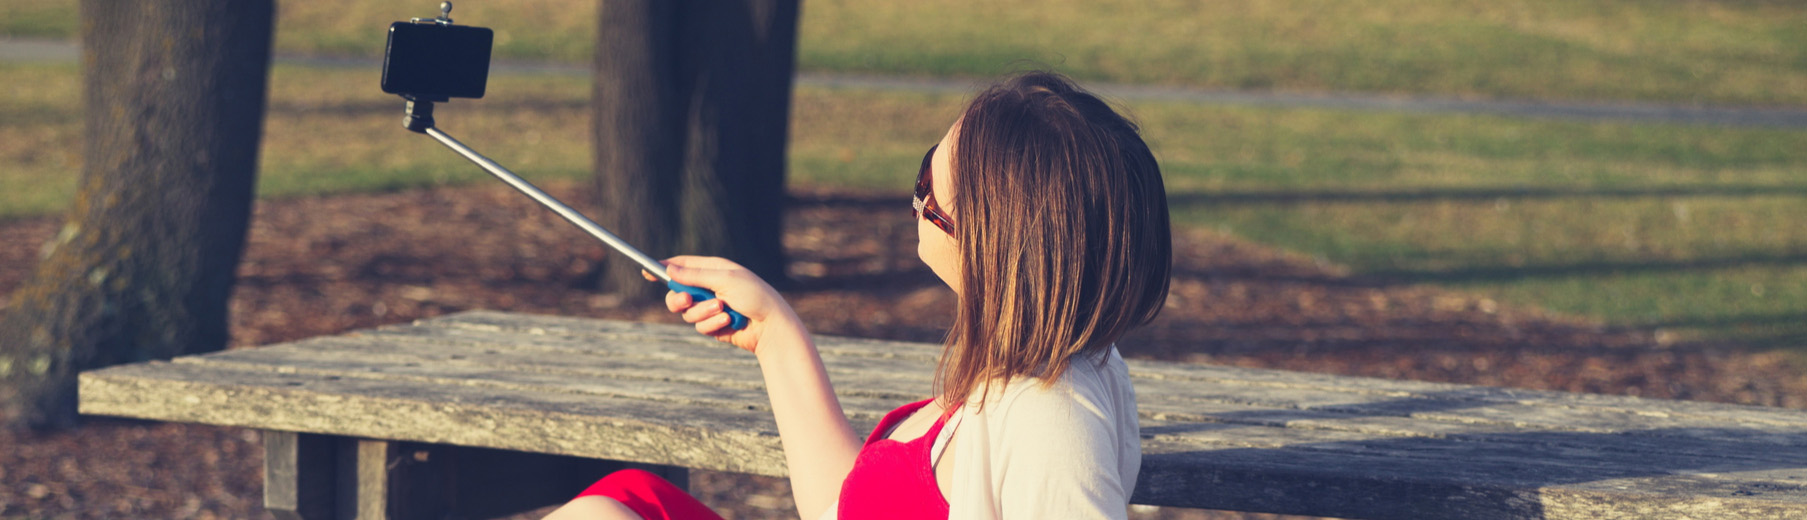 Το Selfie Stick είναι ένα από τα πιο πρακτικά travel gadgets.